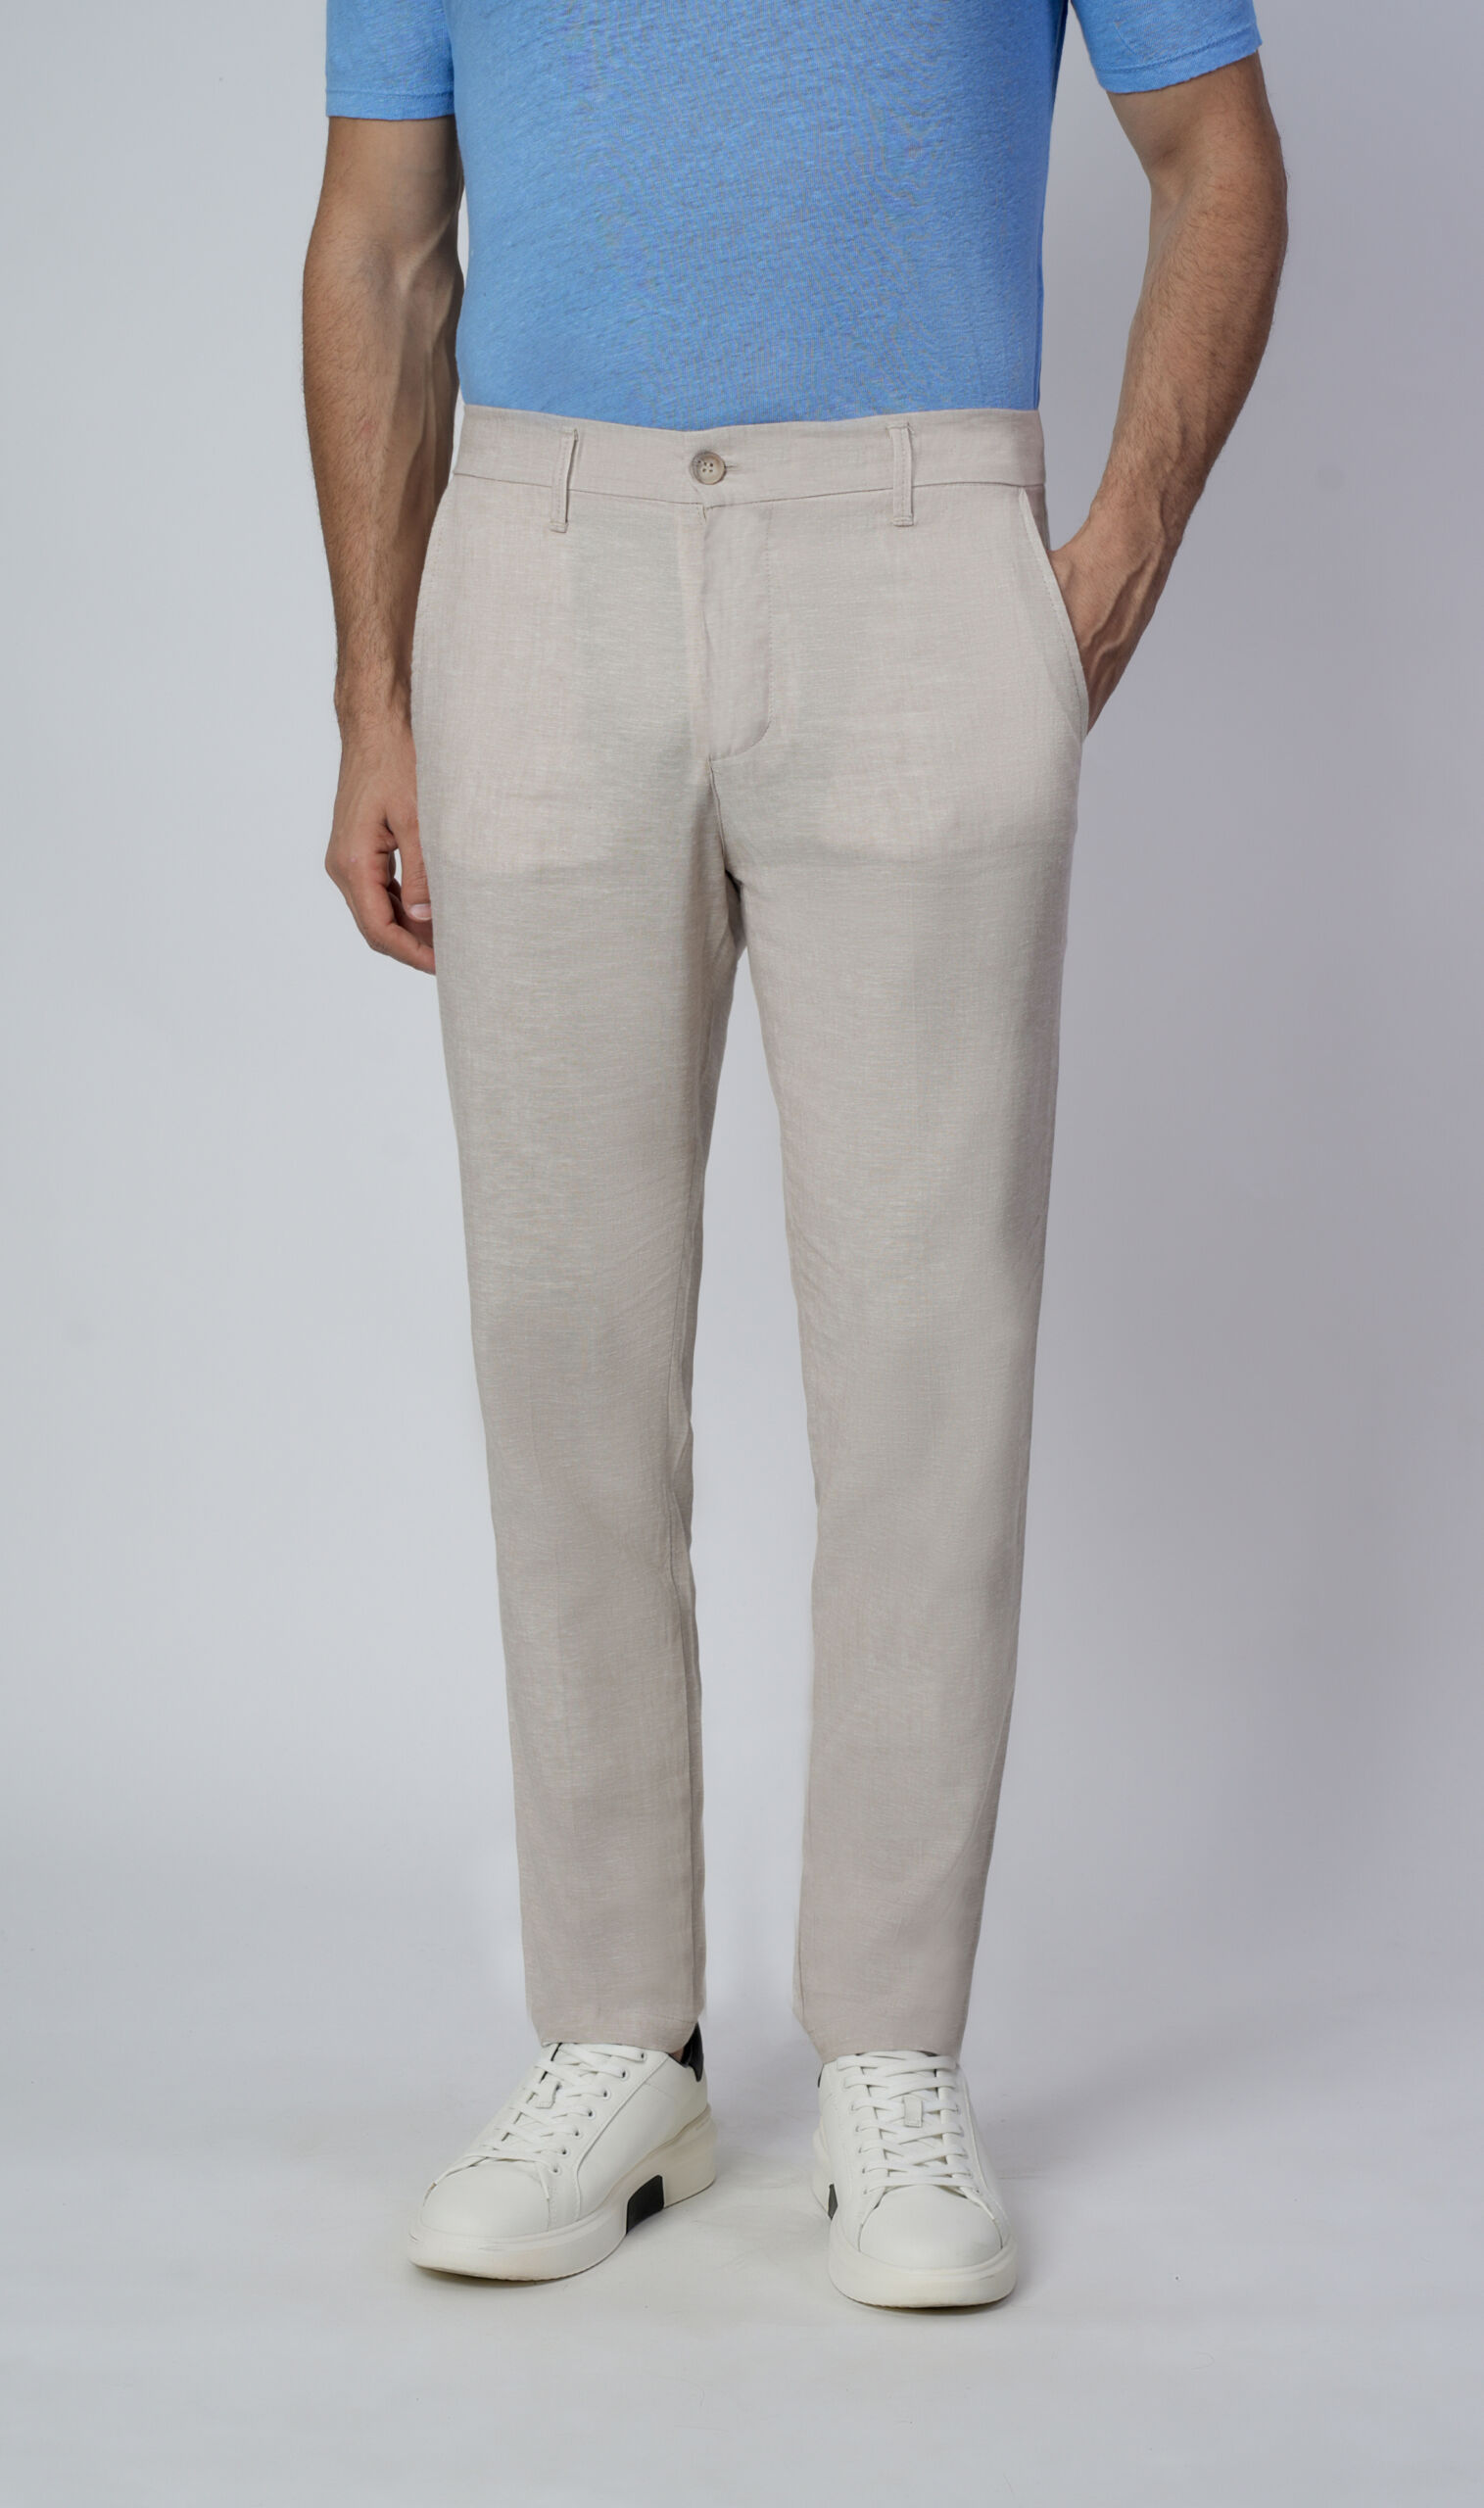 Arezzo Beige 4 scaled 1stAmerican pantalone da uomo classico in lino - pantalone tasca classica 100% Made in Italy